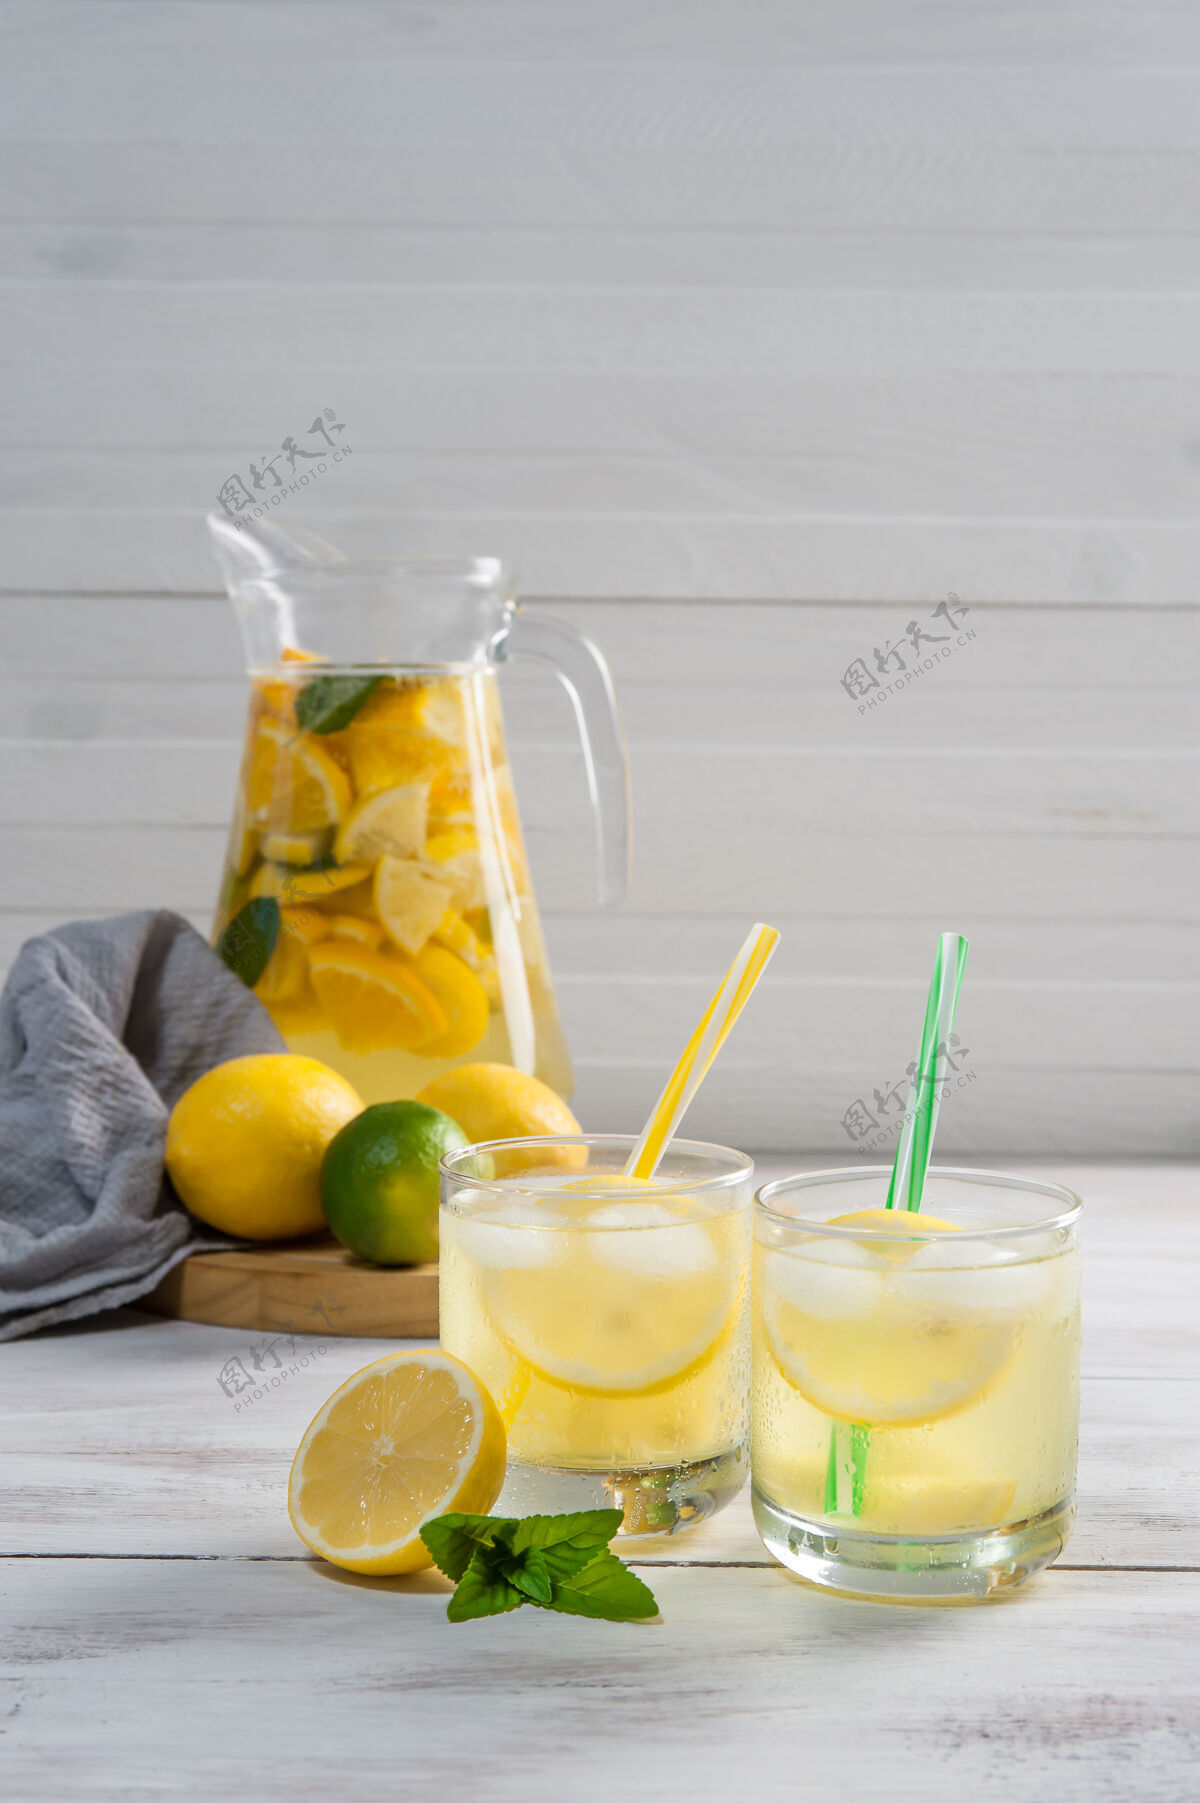 水罐自制柠檬水加柠檬和橙子制成的薄荷 用玻璃杯装的柑橘饮料水果柑橘饮料